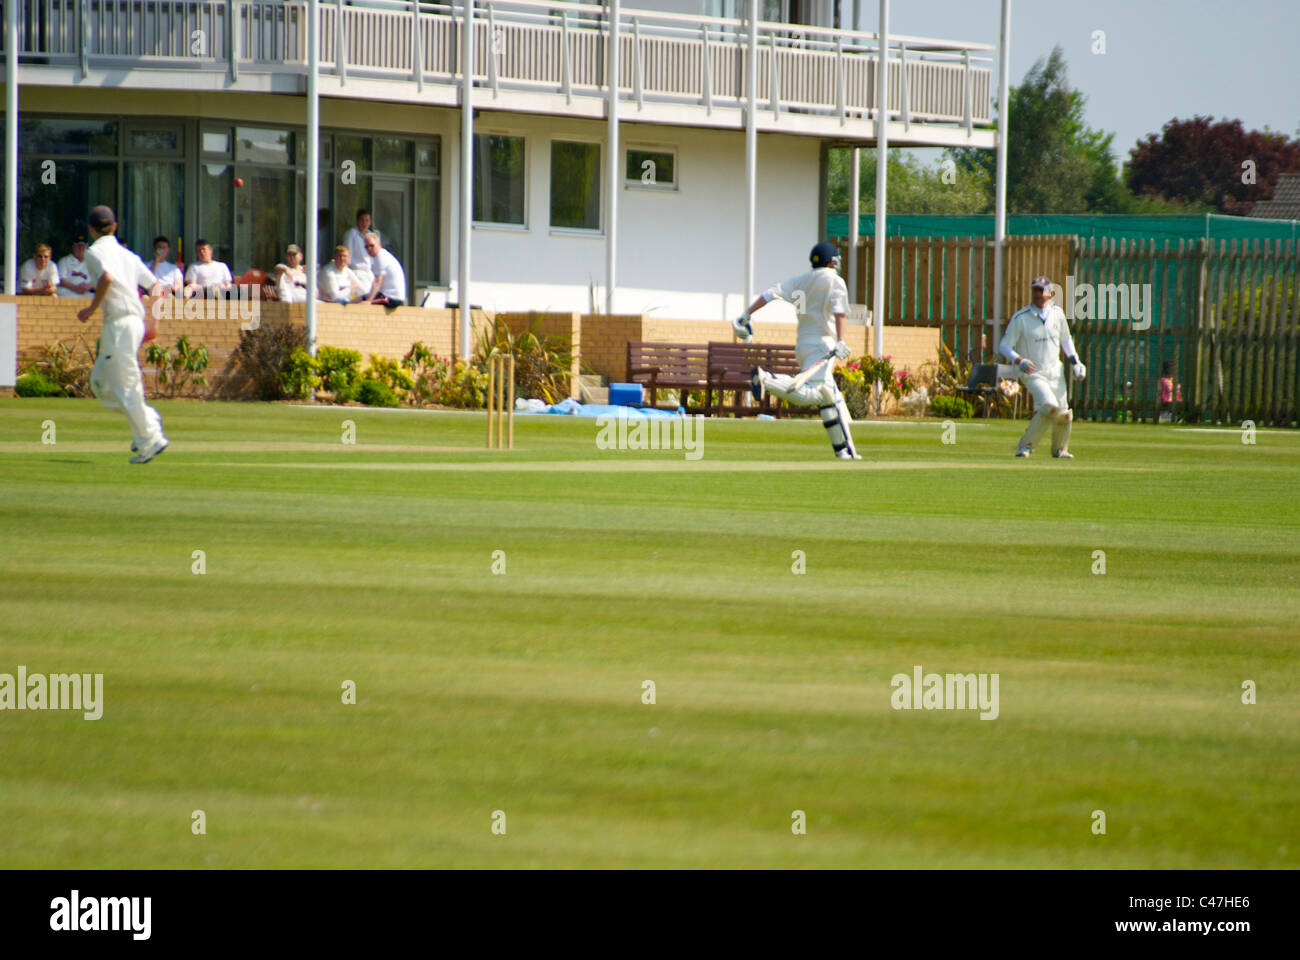 Cricket at Neston Cricket Club Stock Photo